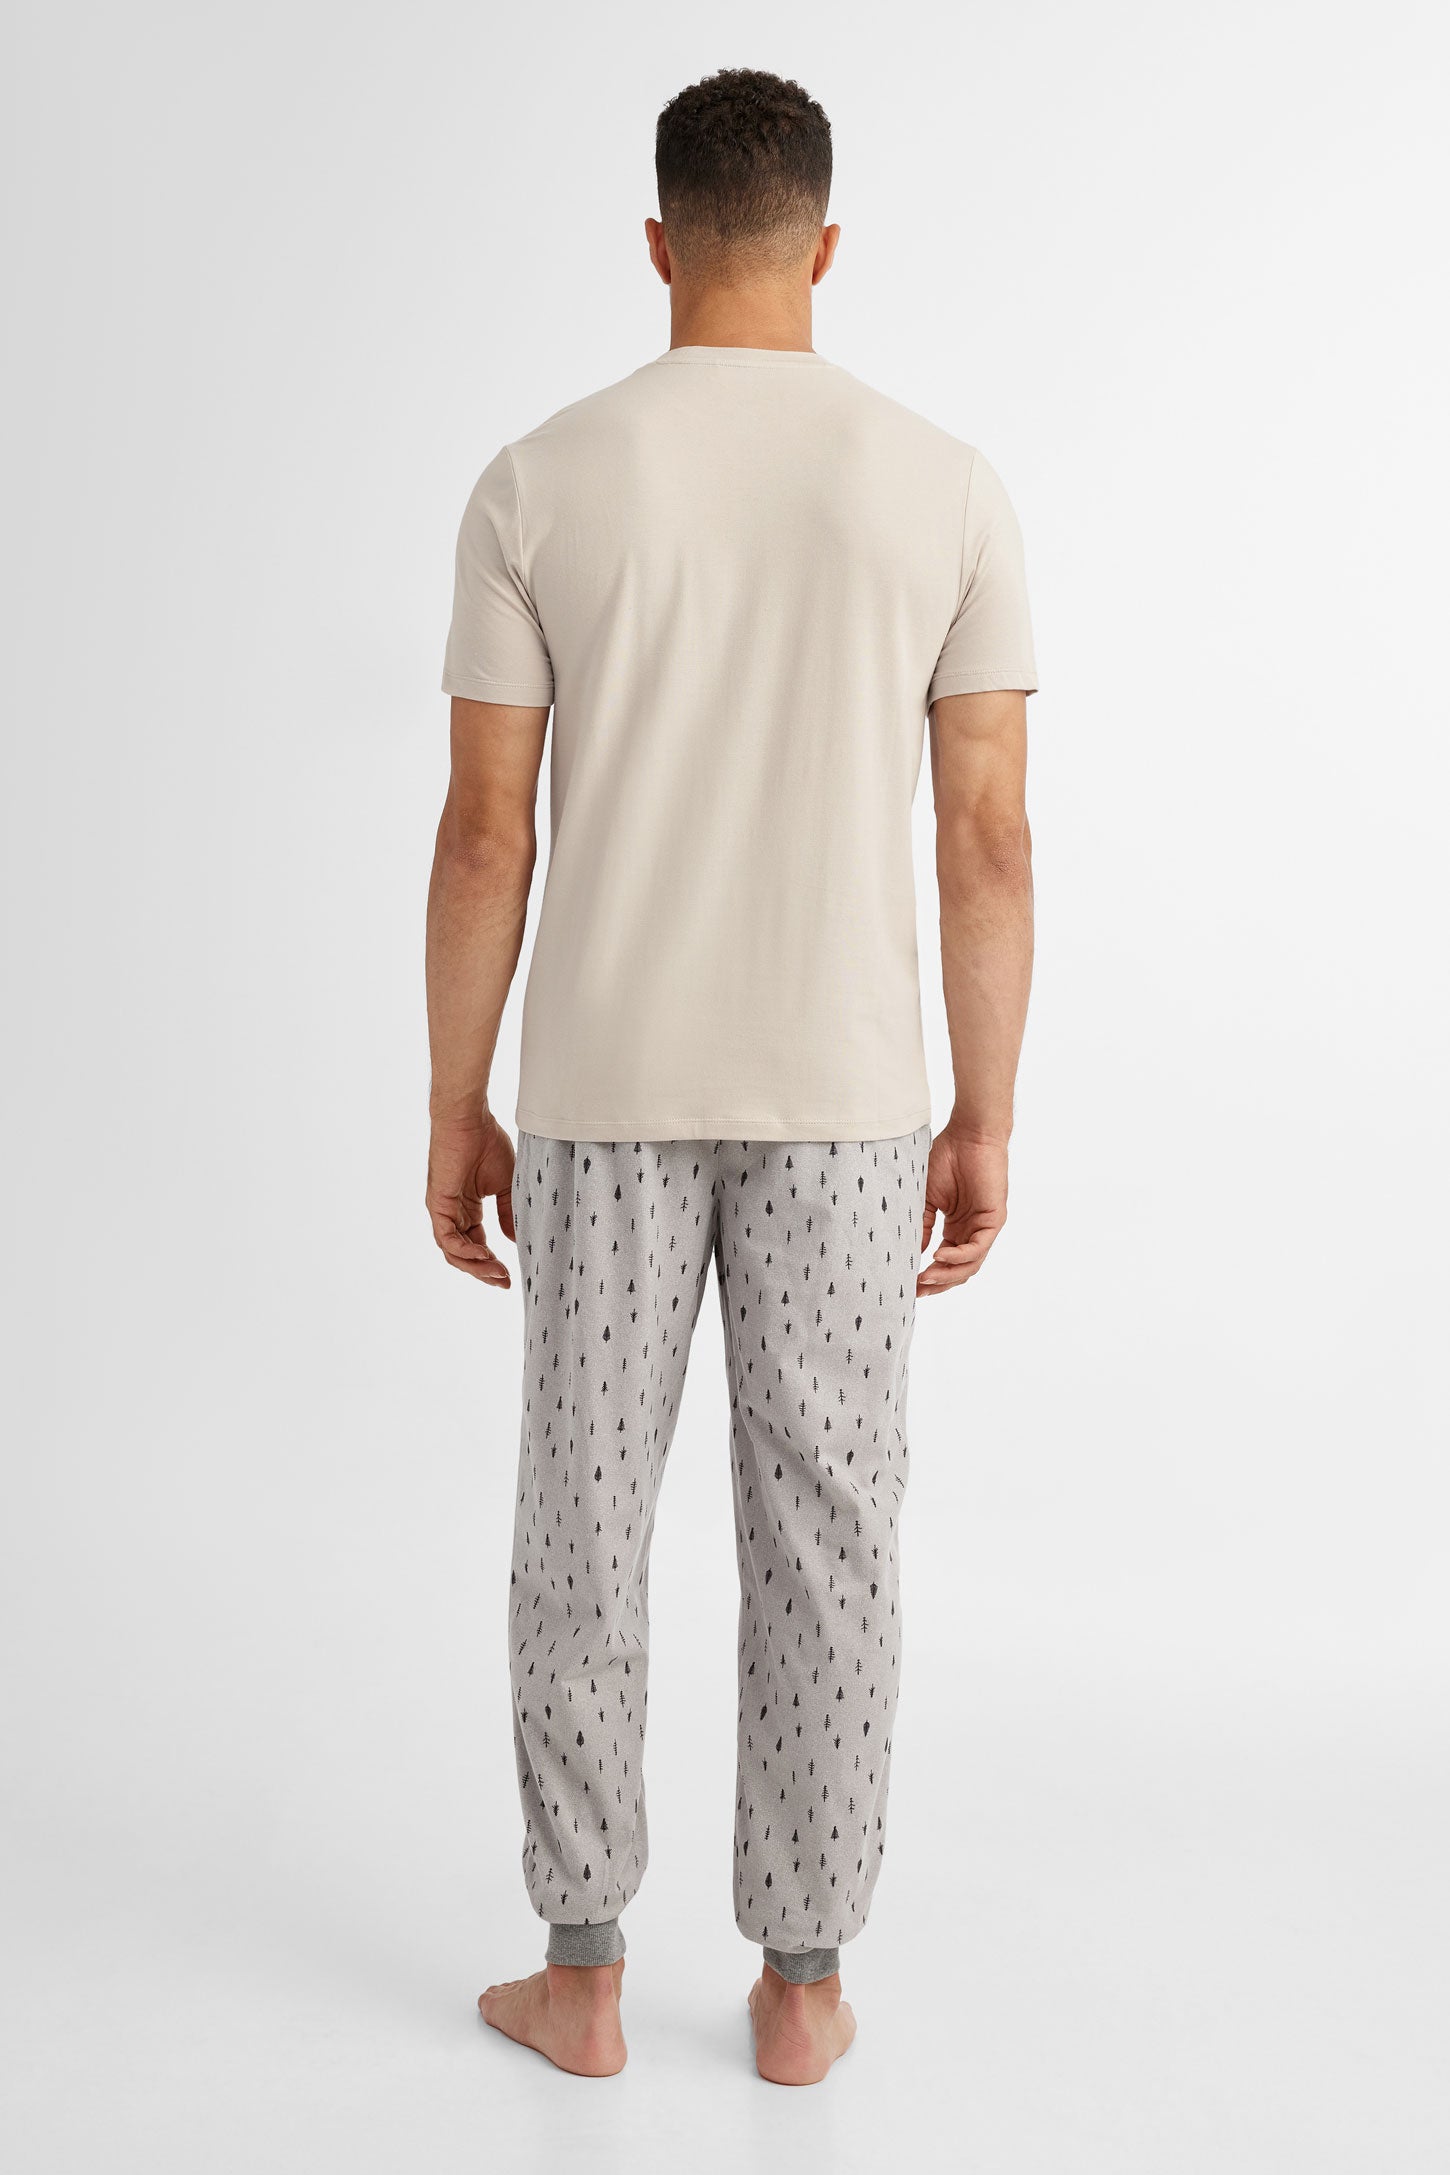 Duos futés, T-shirt pyjama imprimé, 2/40$ - Homme && CHAMEAU